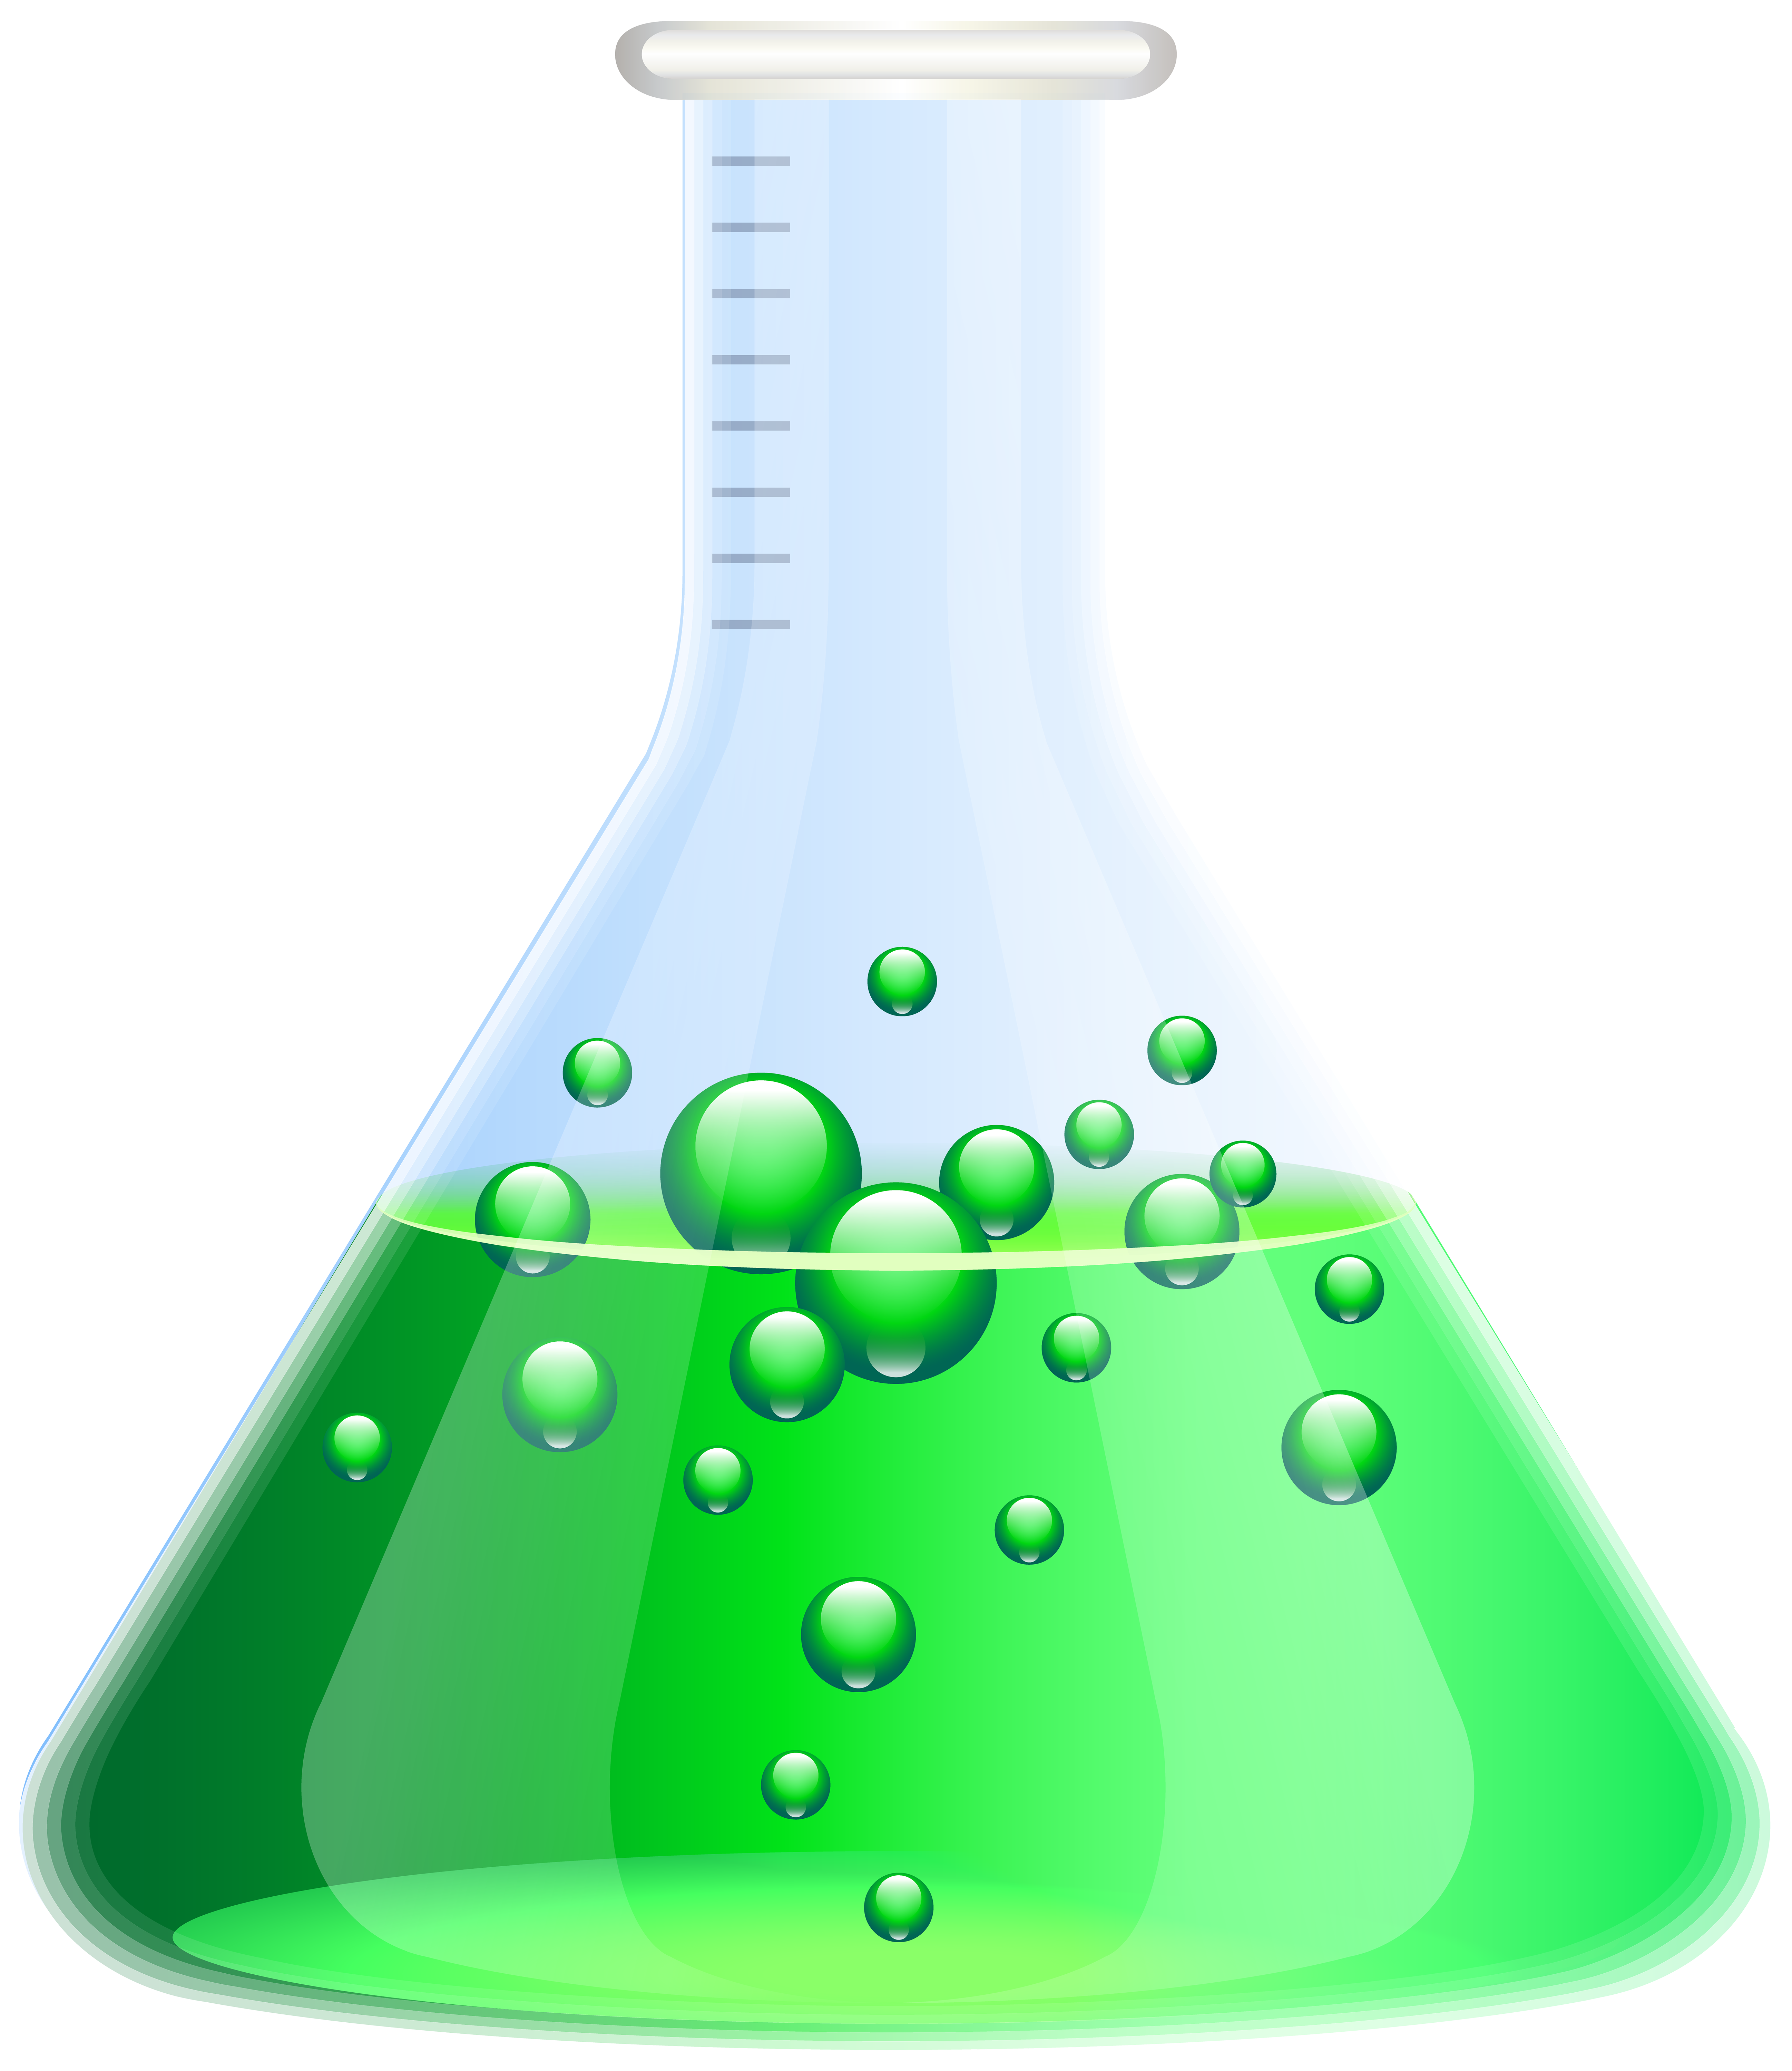 Science Erlenmeyer Flask Beaker Laboratory Flasks Clip Art Png Image ...